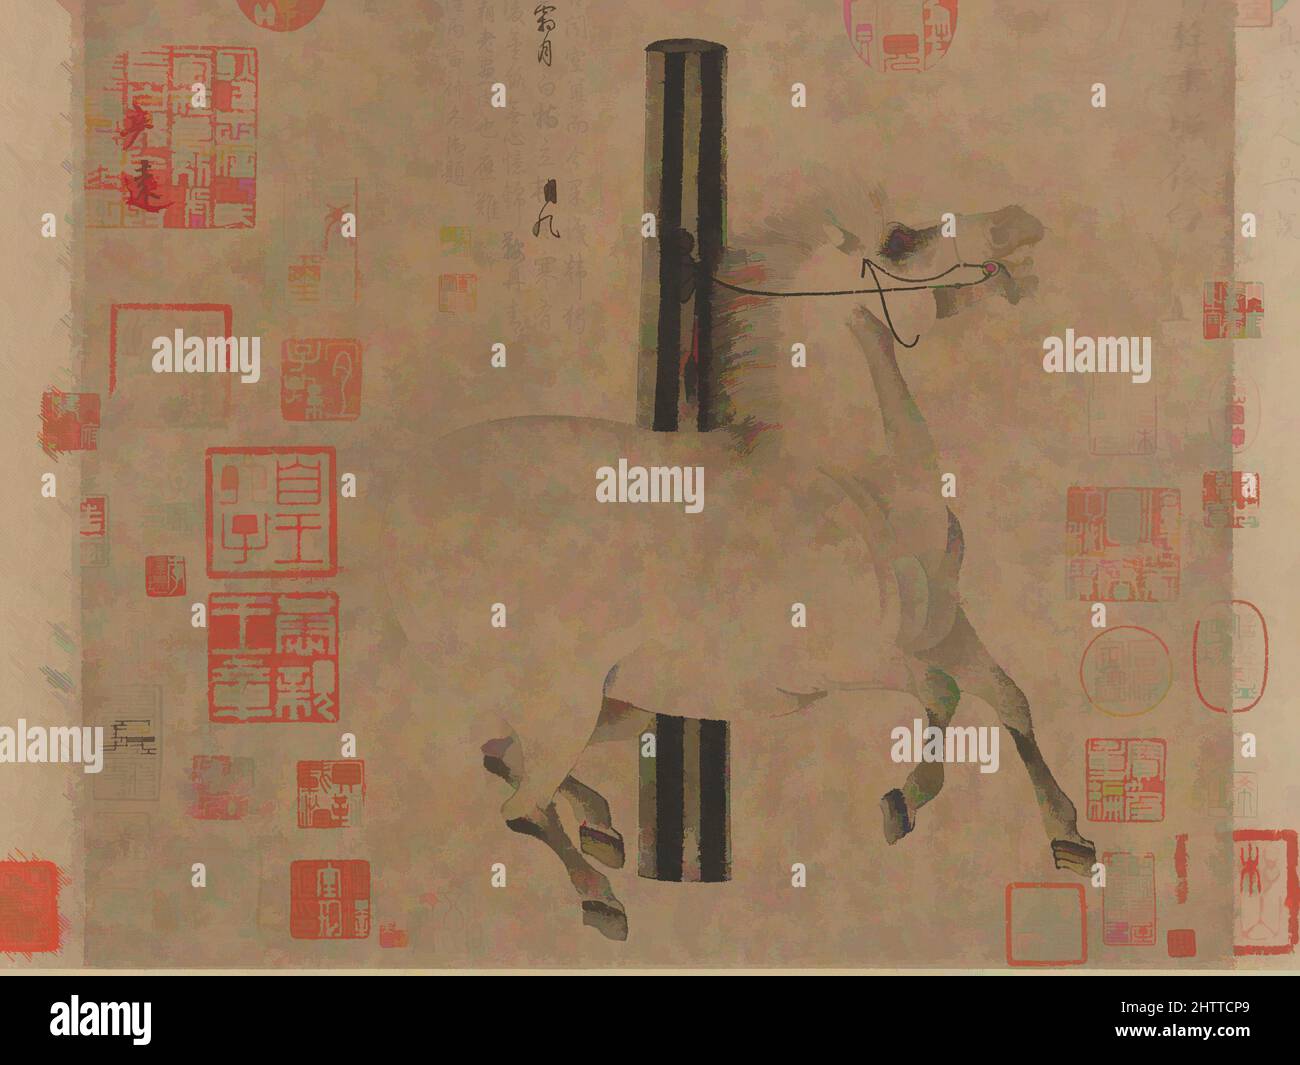 Art inspiré par la nuit-Shining White, 唐 韓幹 照夜白圖 卷, Tang Dynasty (618–907), env. 750, Chine, défilement manuel ; encre sur papier, image : 12 1/8 x 13 3/8 cm (30,8 x 34 cm), peintures, Han Gan (chinois, actif ca. 742–756), Un des plus grands peintres de la dynastie Tang, Han Gan était connu pour sa capture, des œuvres classiques modernisées par Artotop avec une touche de modernité. Formes, couleur et valeur, impact visuel accrocheur sur l'art émotions par la liberté d'œuvres d'art d'une manière contemporaine. Un message intemporel qui cherche une nouvelle direction créative. Artistes qui se tournent vers le support numérique et créent le NFT Artotop Banque D'Images